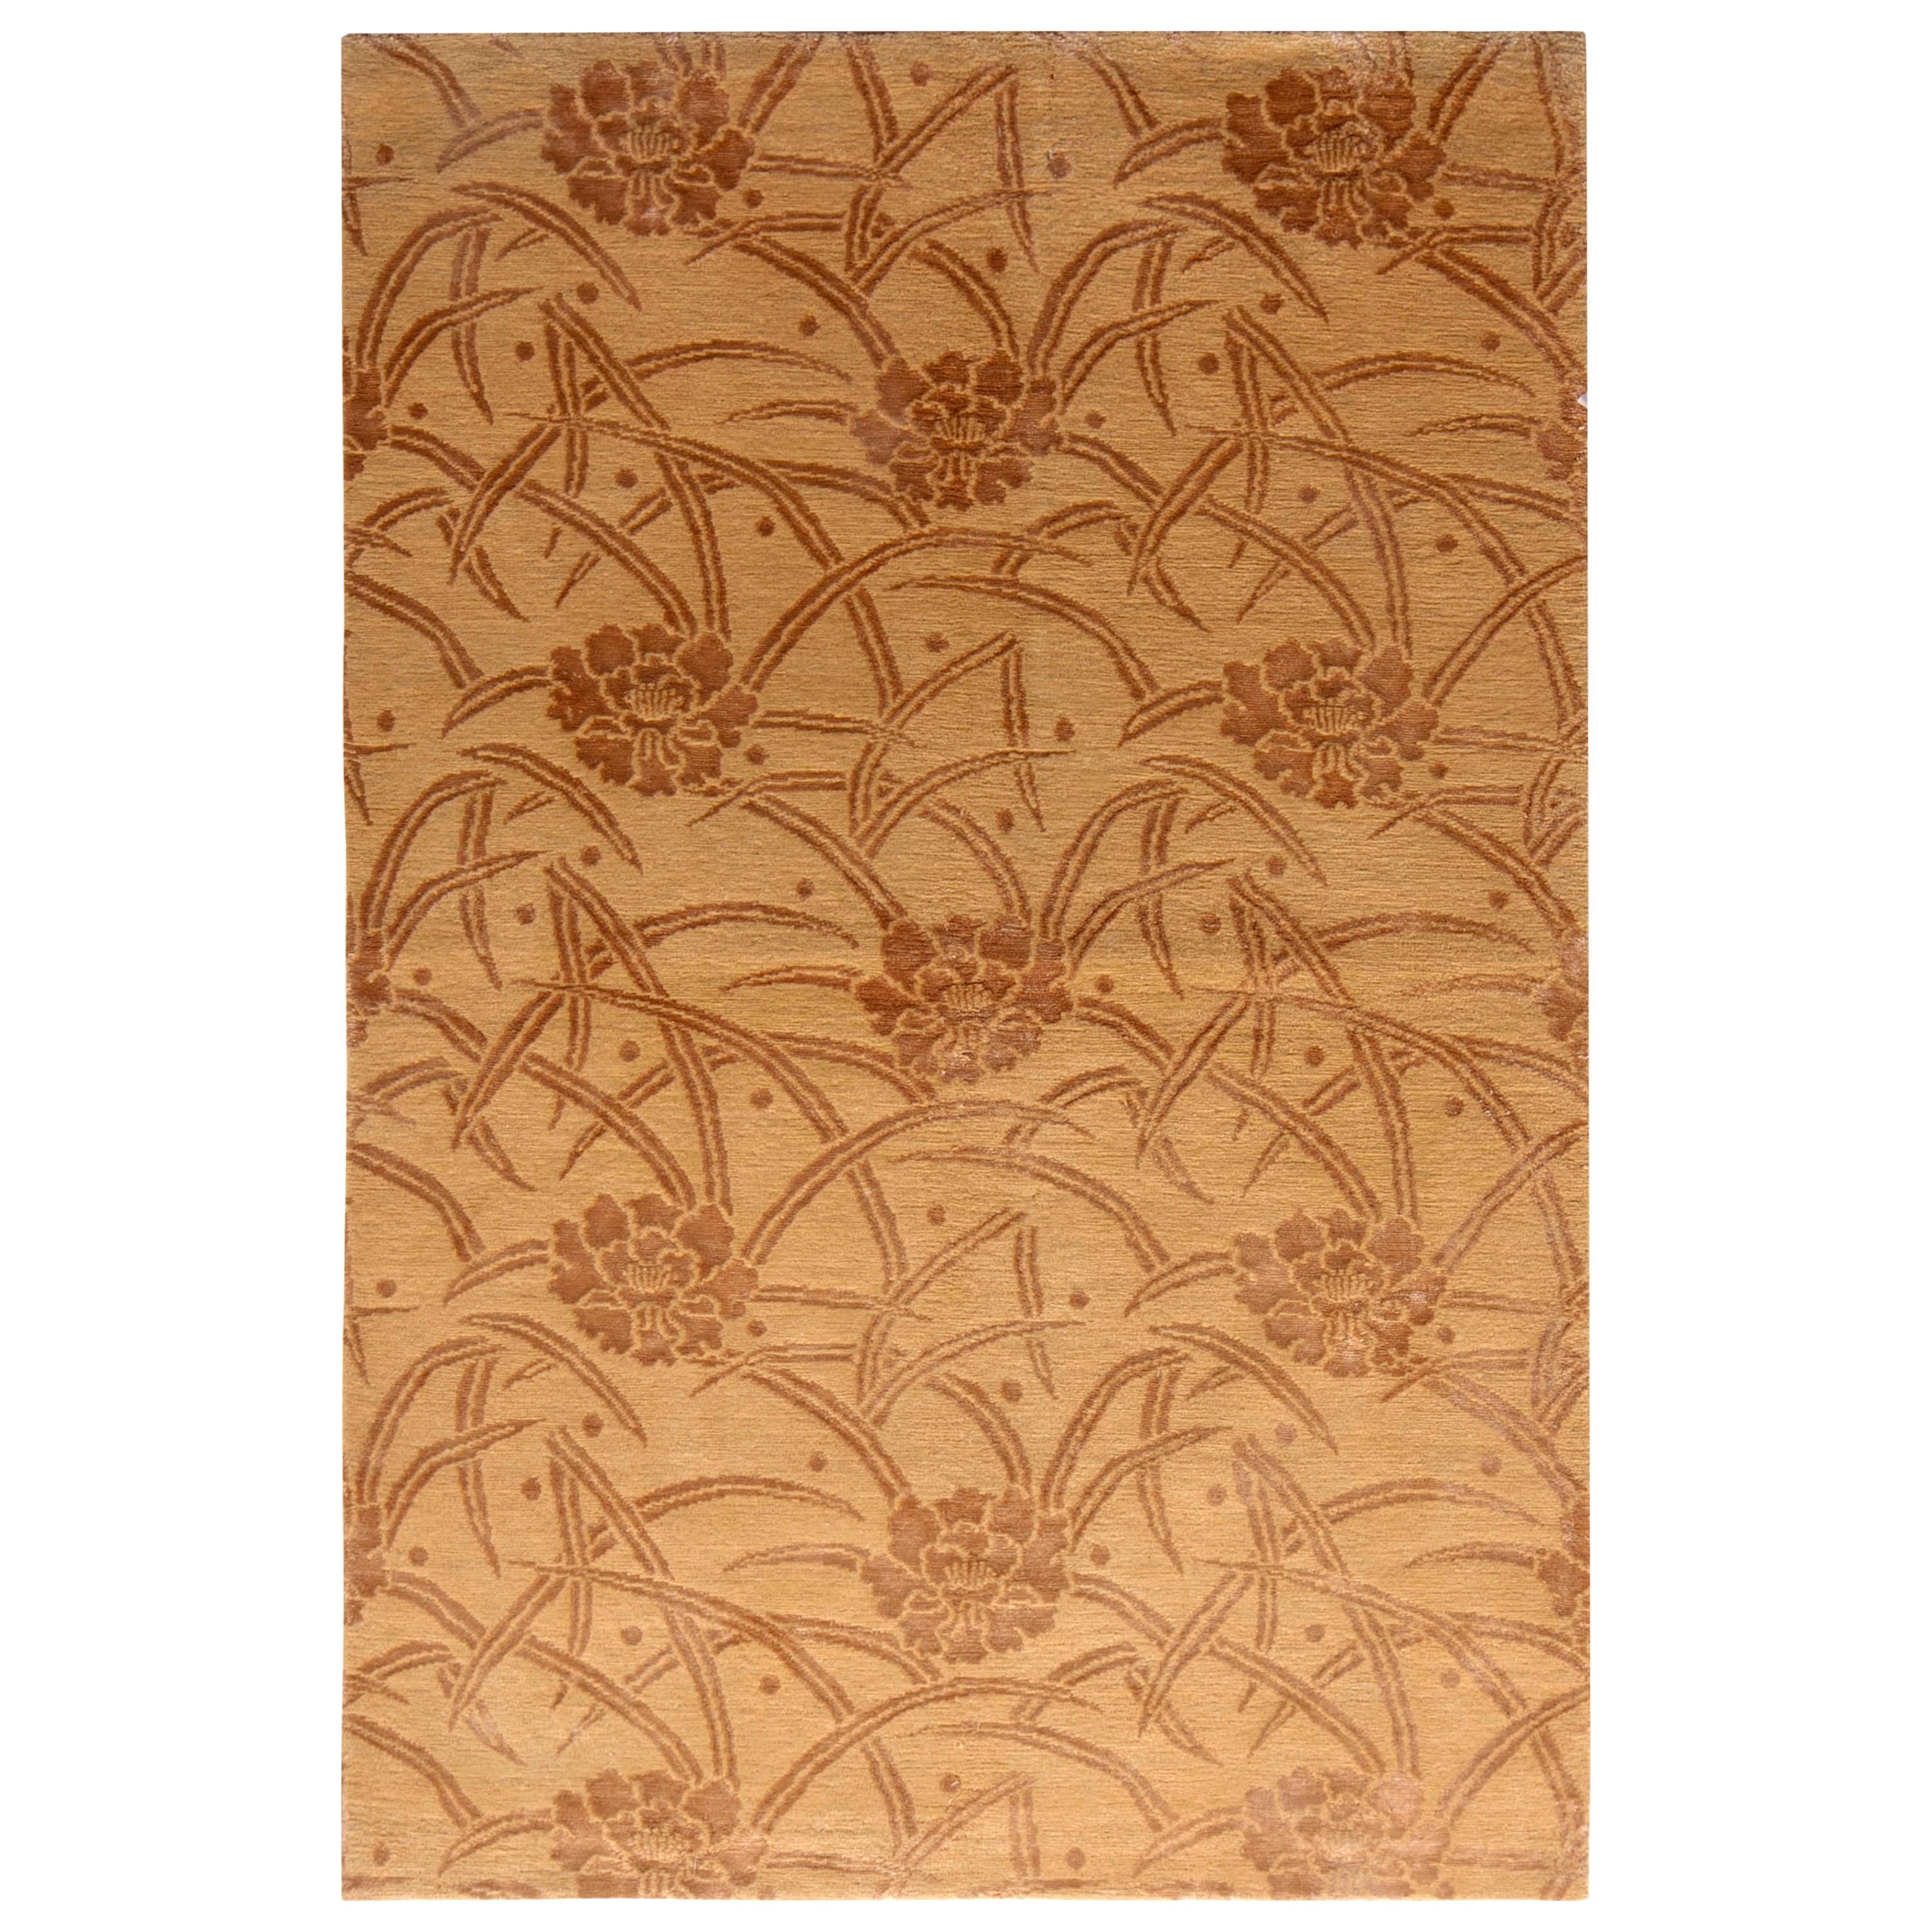 Rug & Kilim's European-Style Rug Beige Brown Floral Pattern